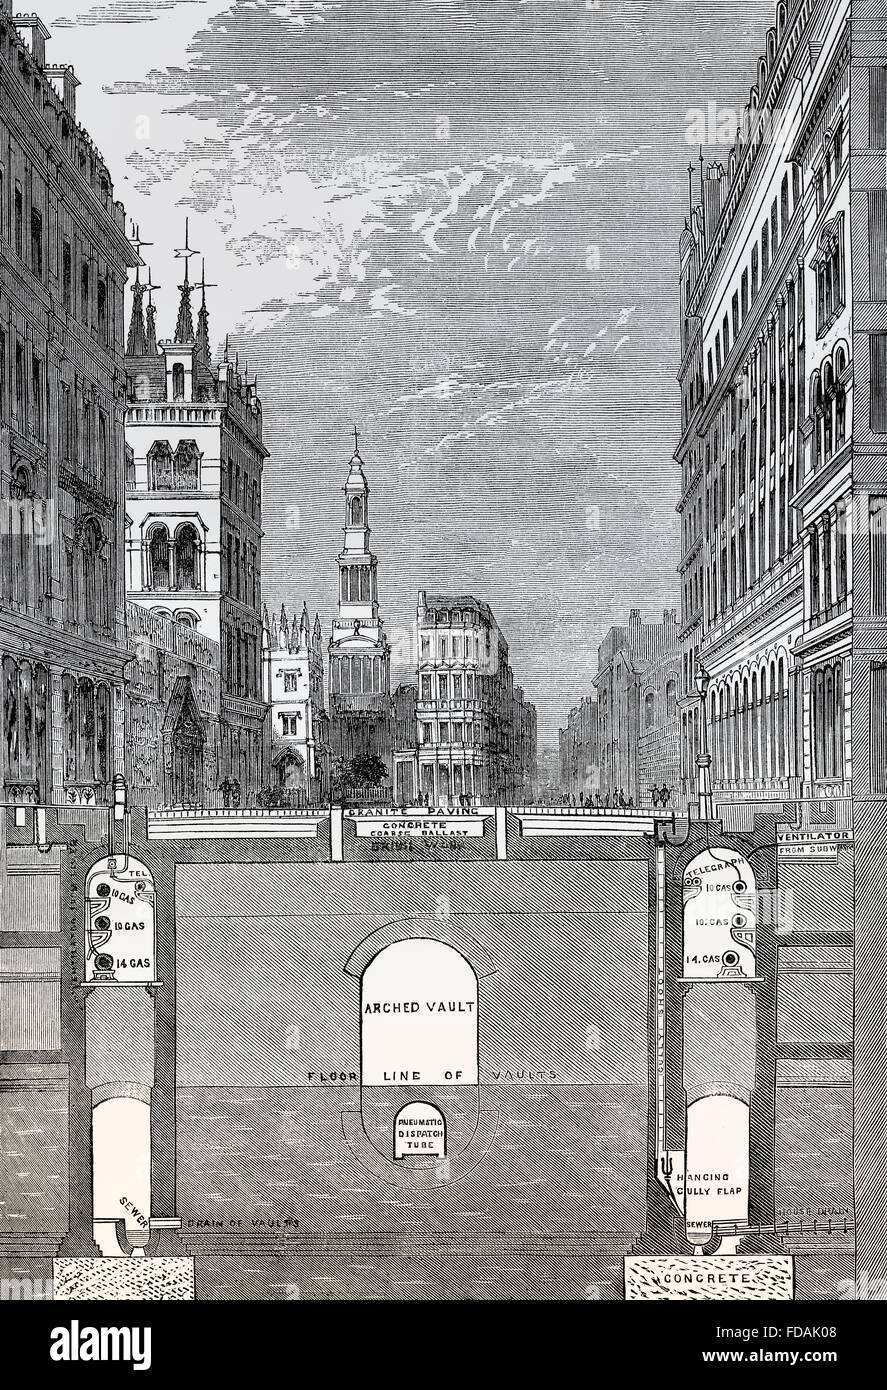 Shematical HOLBORN VIADUCT, vue en coupe du passage inférieur, 19e siècle, Londres, Angleterre Banque D'Images